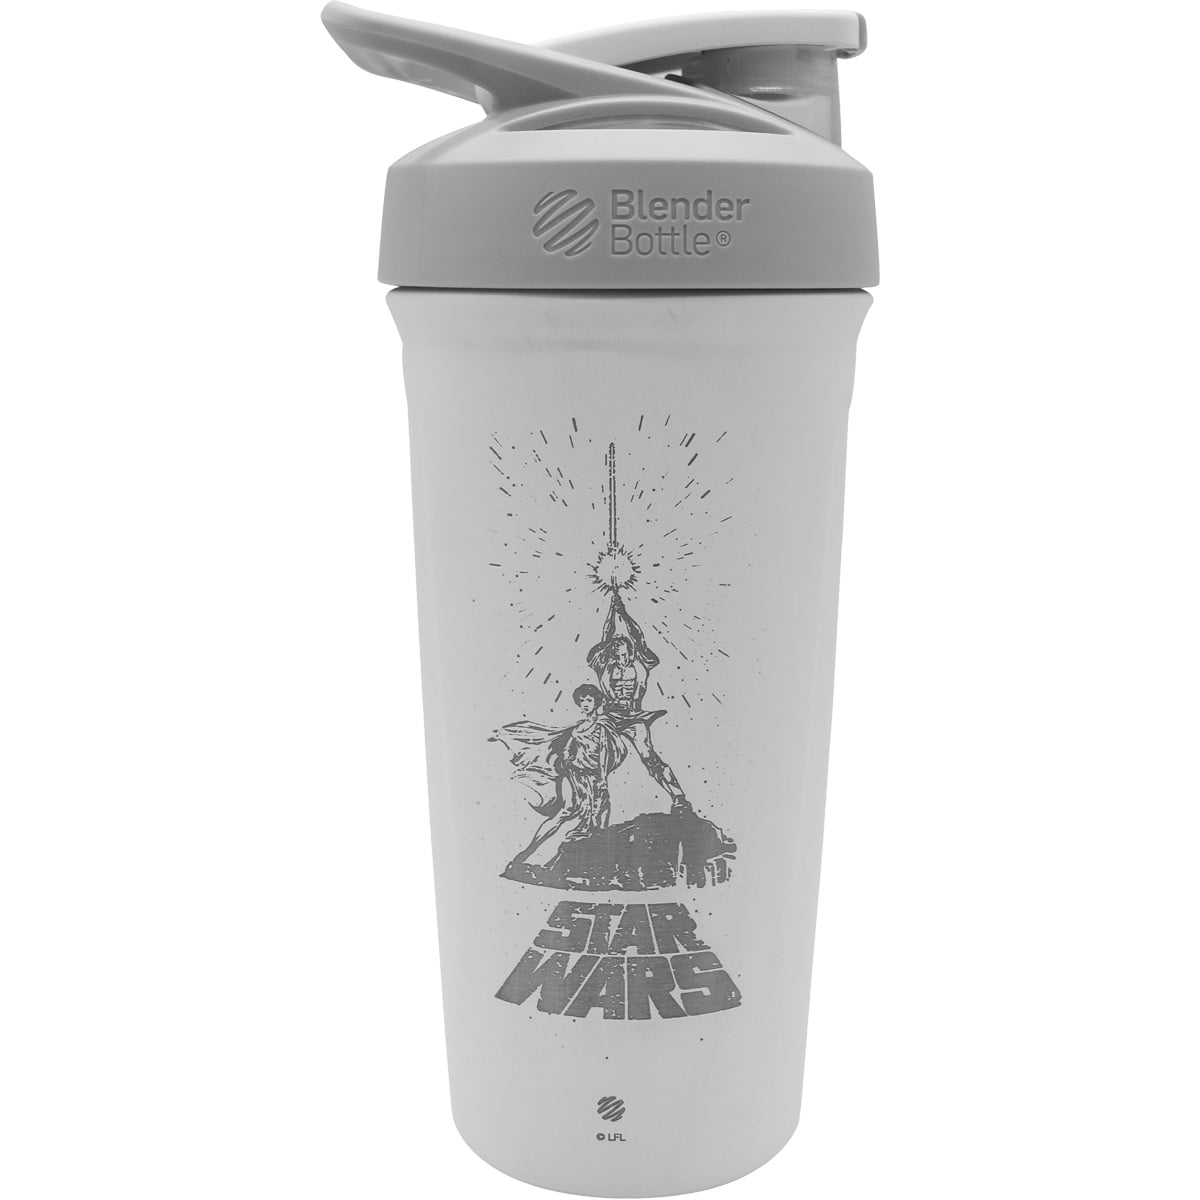 Blender Bottle Star Wars Strada 24 oz. Stainless Steel Shaker